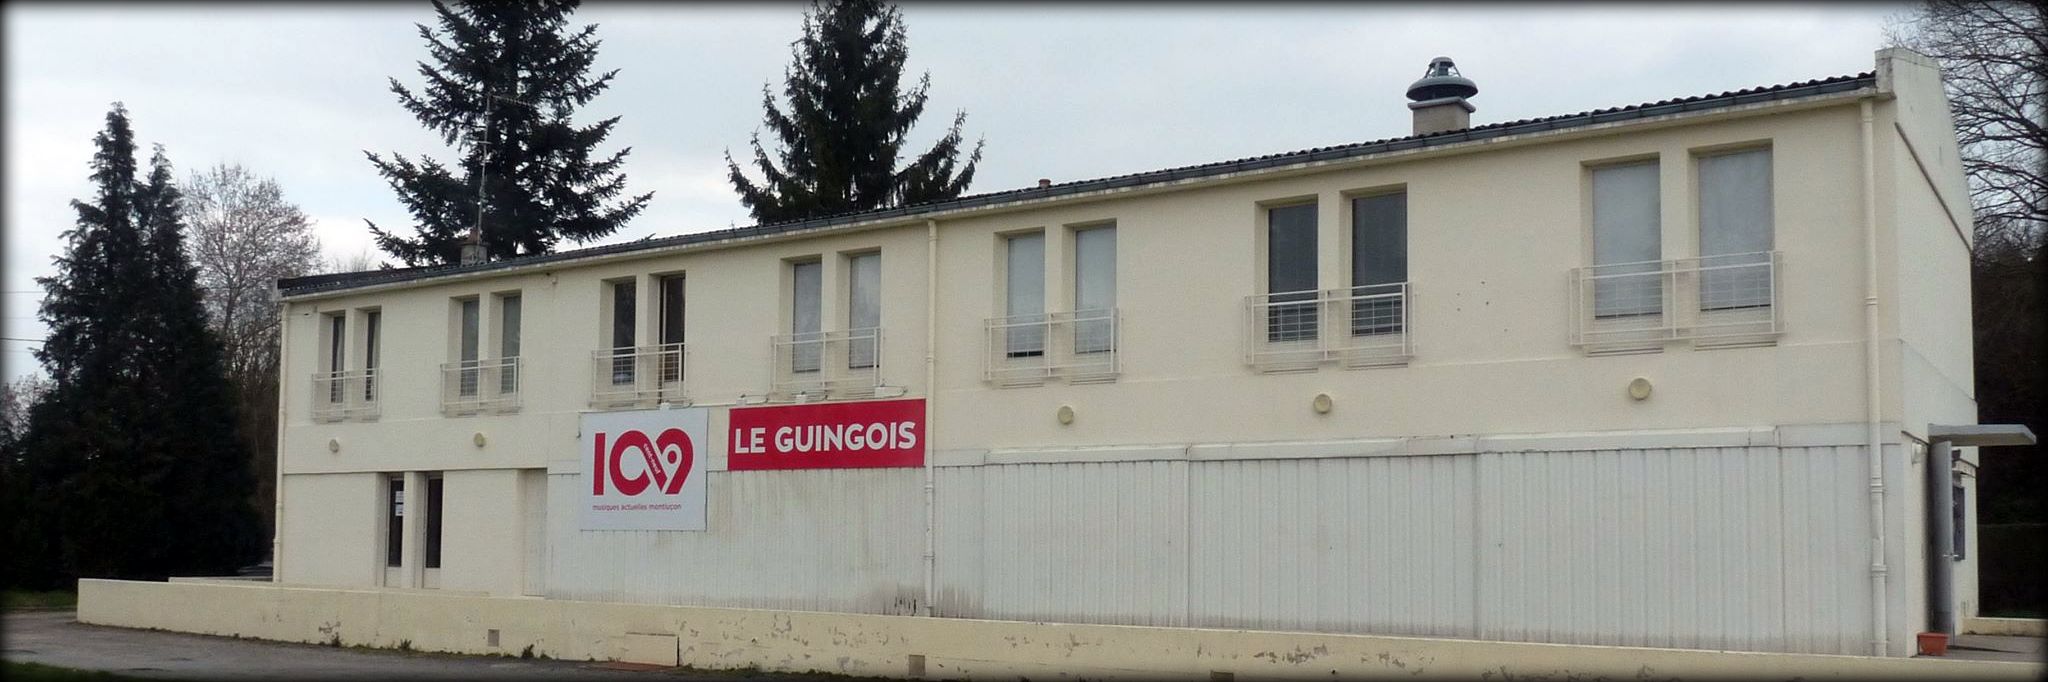 Le Guingois - Le 109 à Montluçon